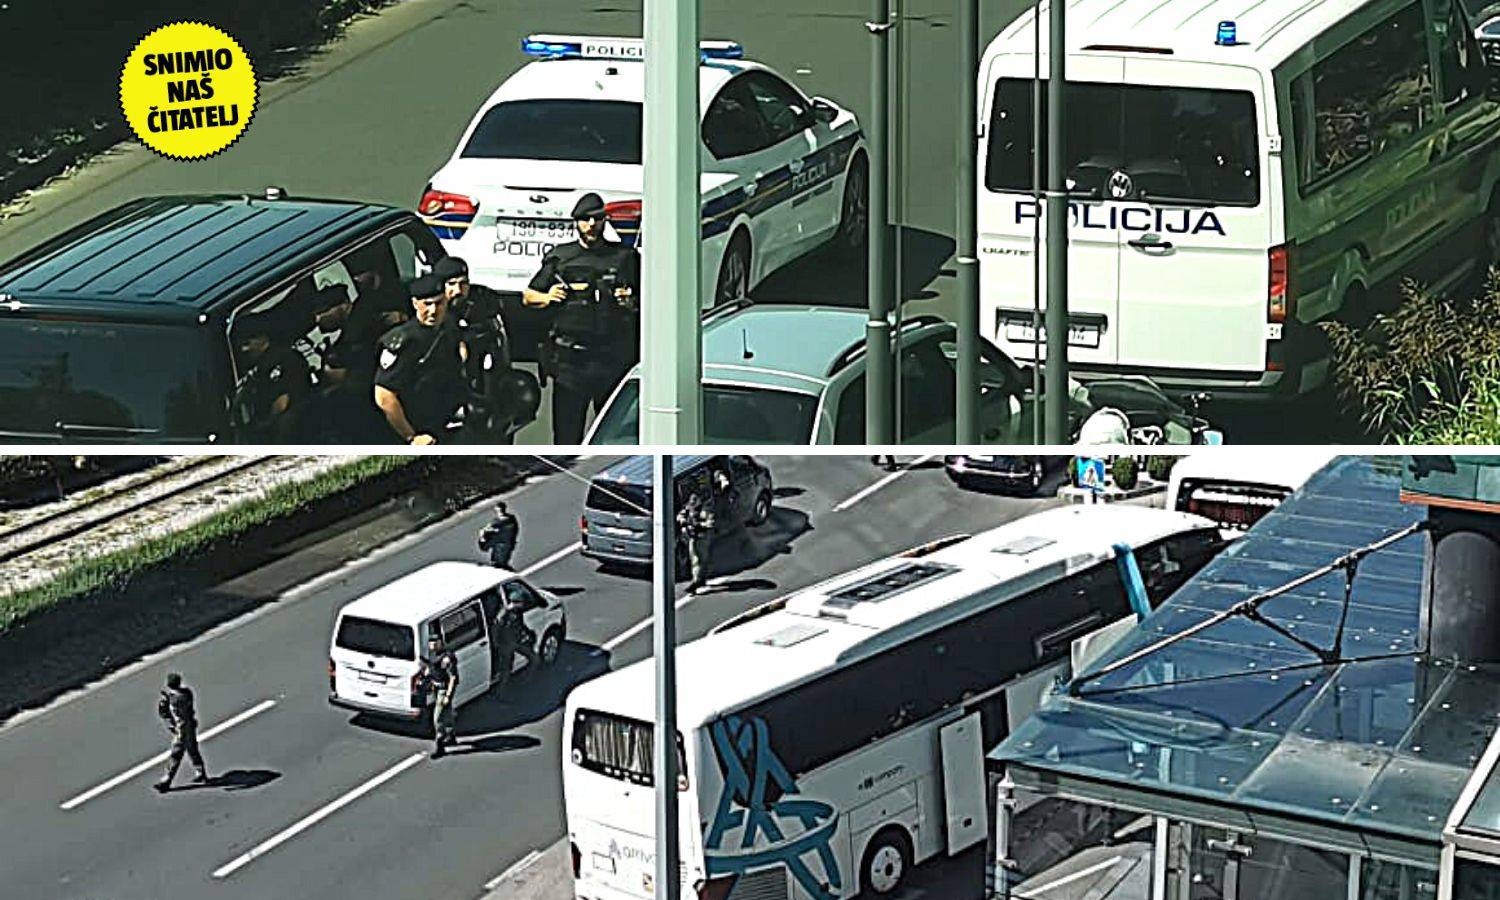 AEK-ovi igrači stigli u Zagreb, jake policijske snage čuvaju hotel: 'Sve je puno interventne'